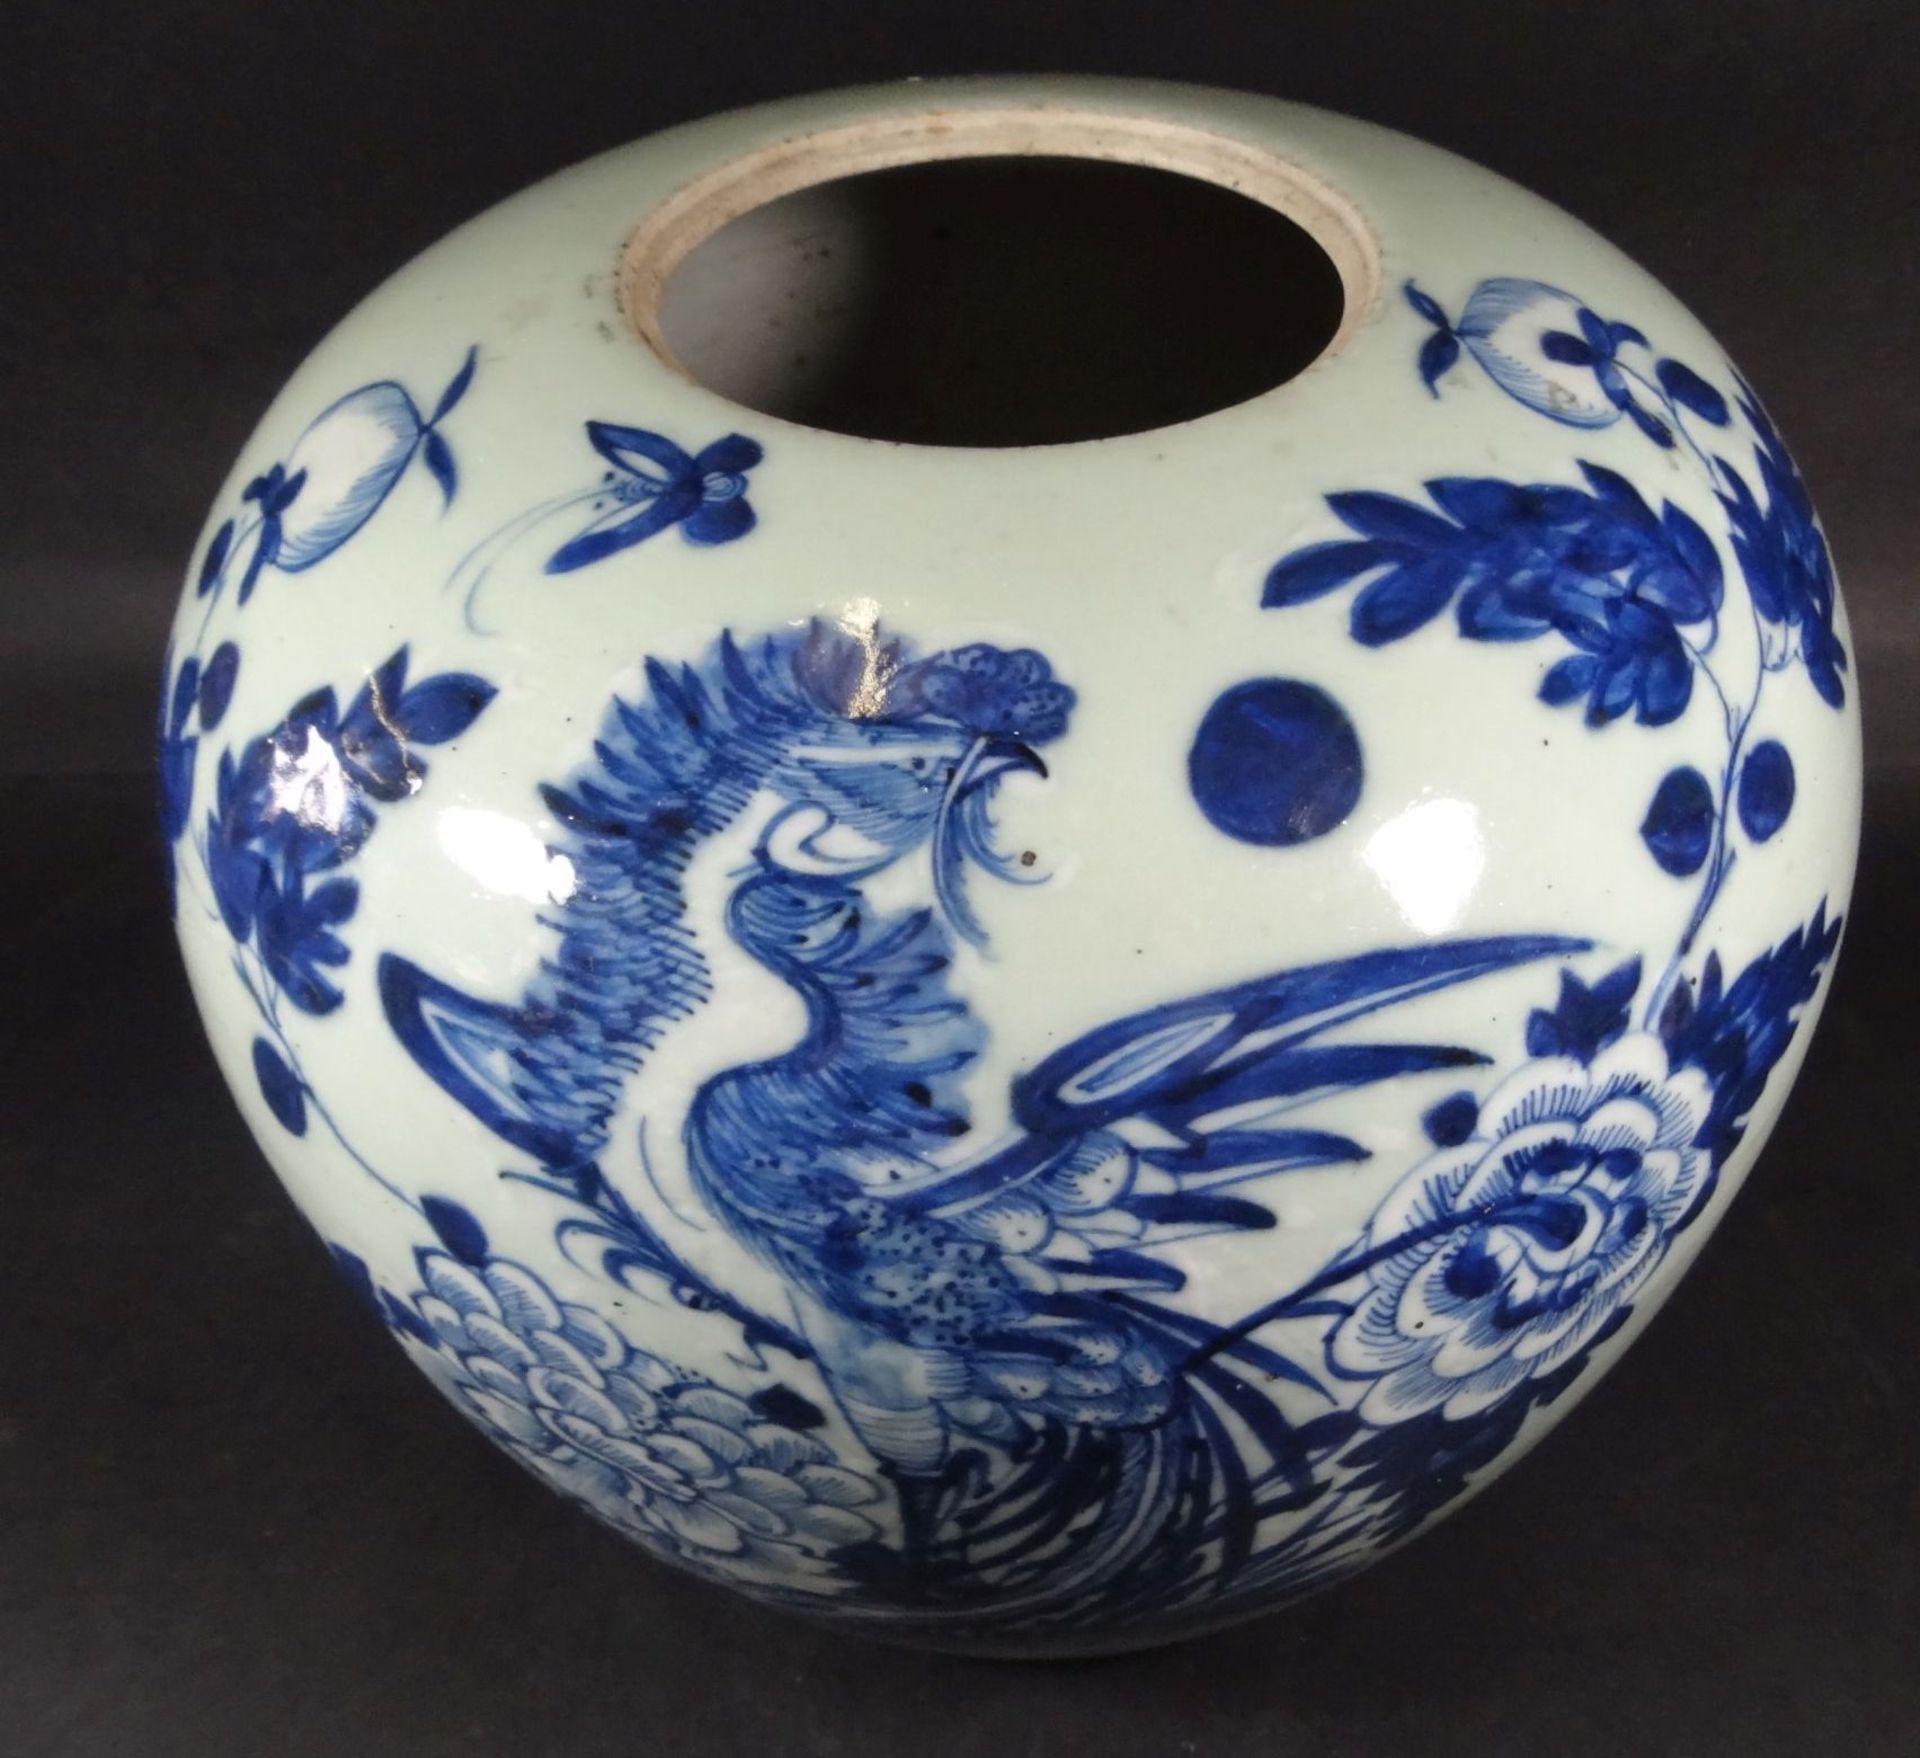 grosses Ingwergefäss oder ähnliches, Blaumalerei mit Vogel, wohl 19.Jhd. China, H-21 cm, D-25- - - - Bild 4 aus 7